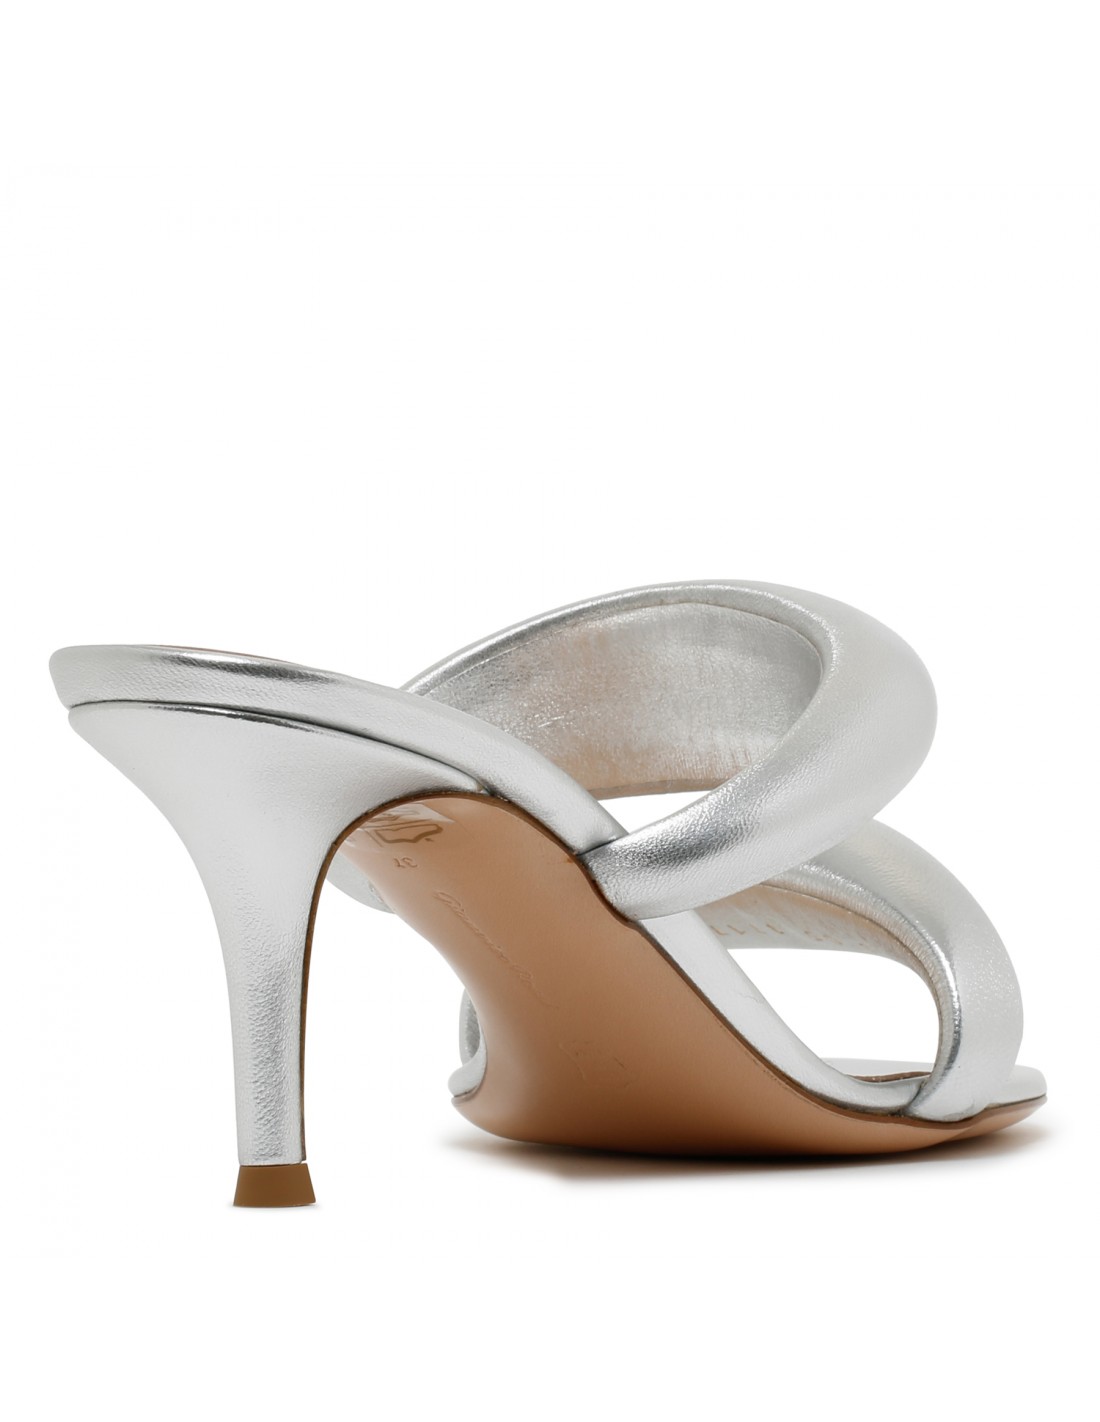 Bijoux silver-hue mule sandals